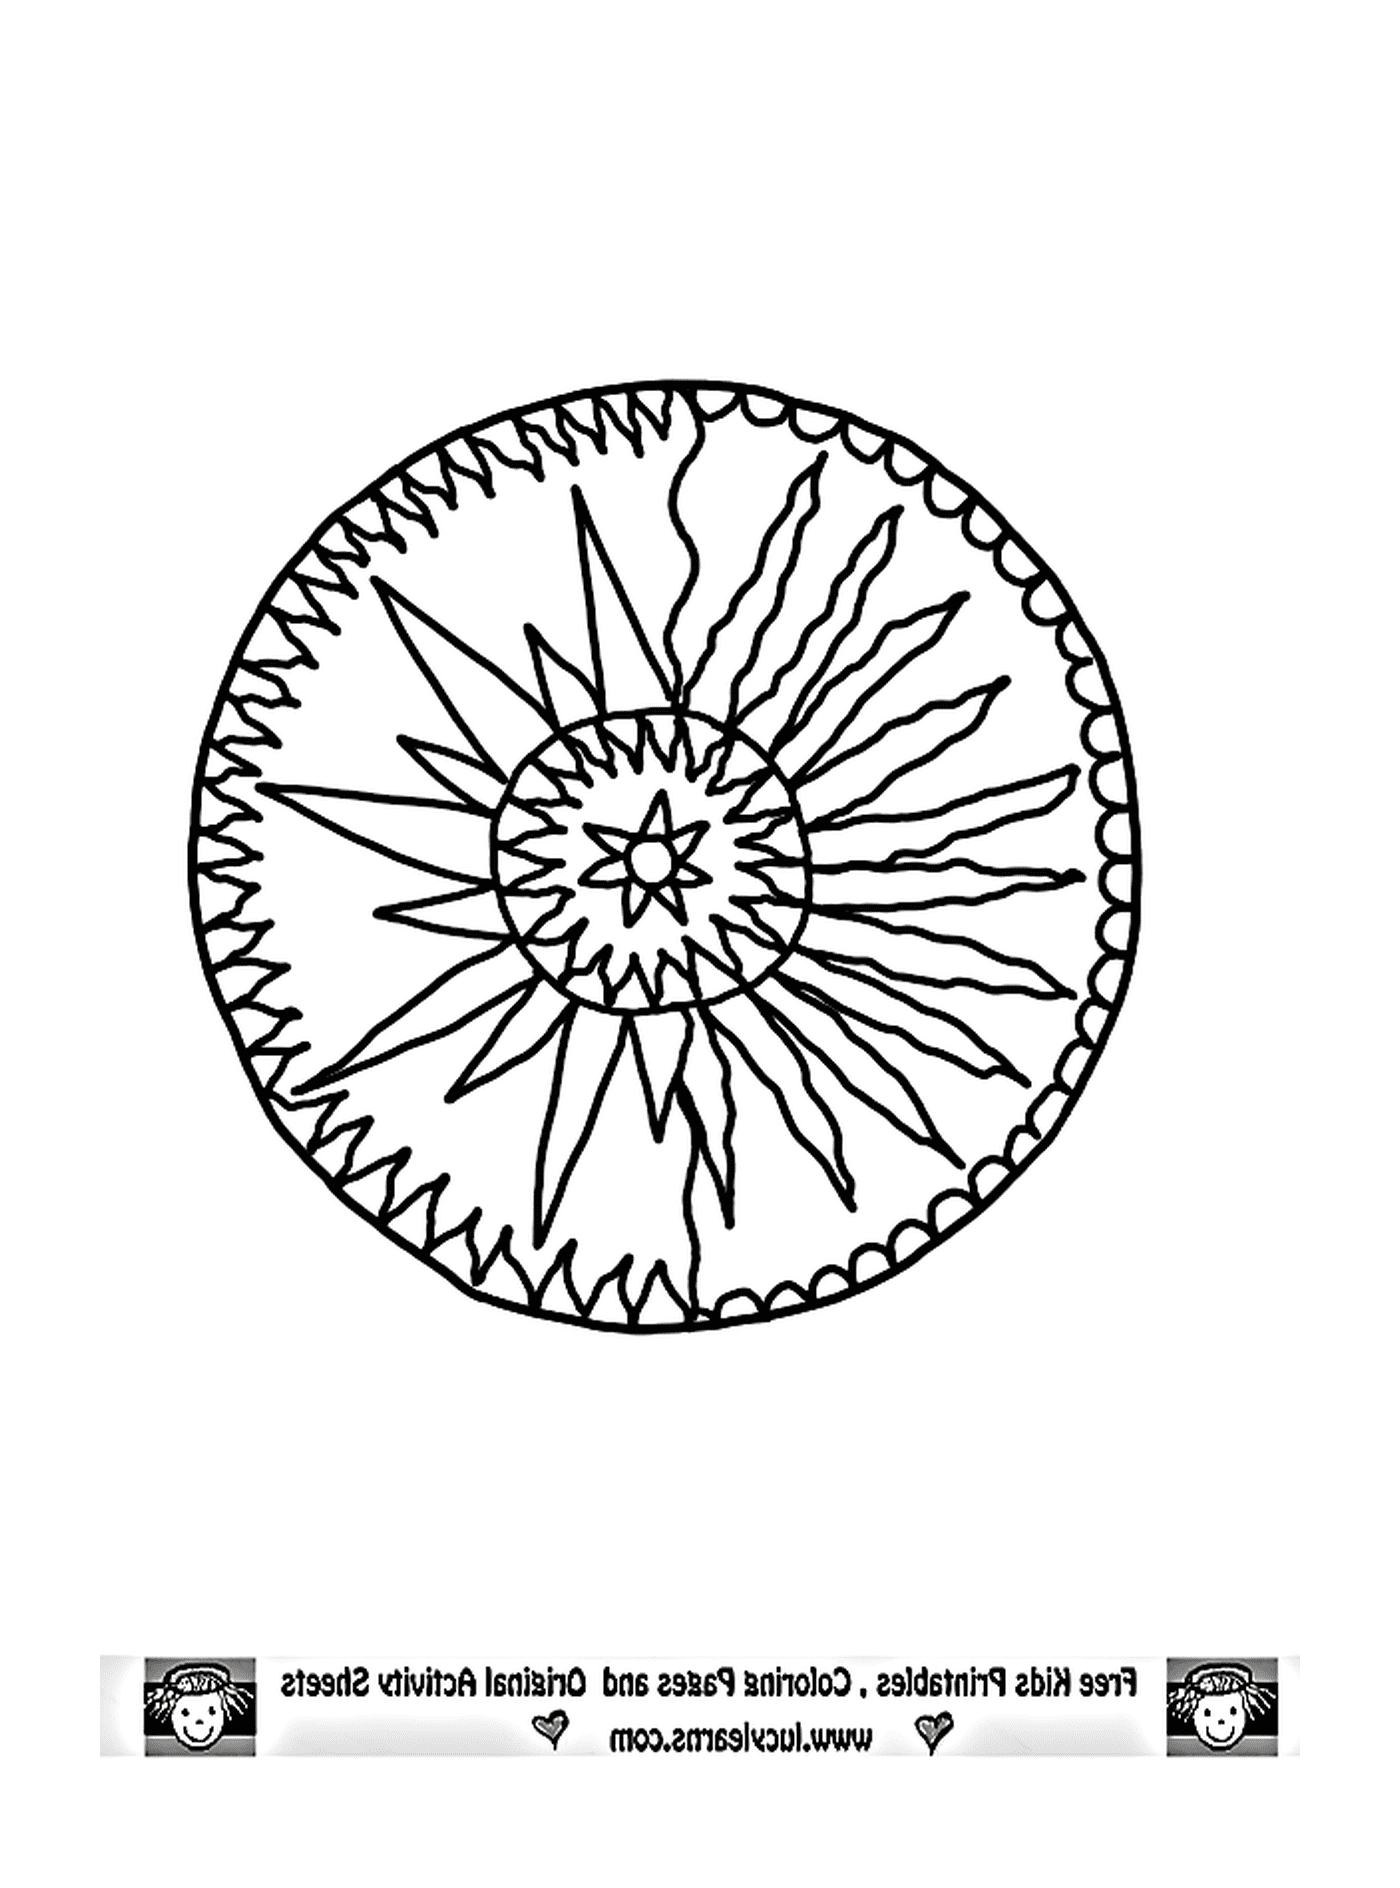  un disegno astratto con cuori e spirali 